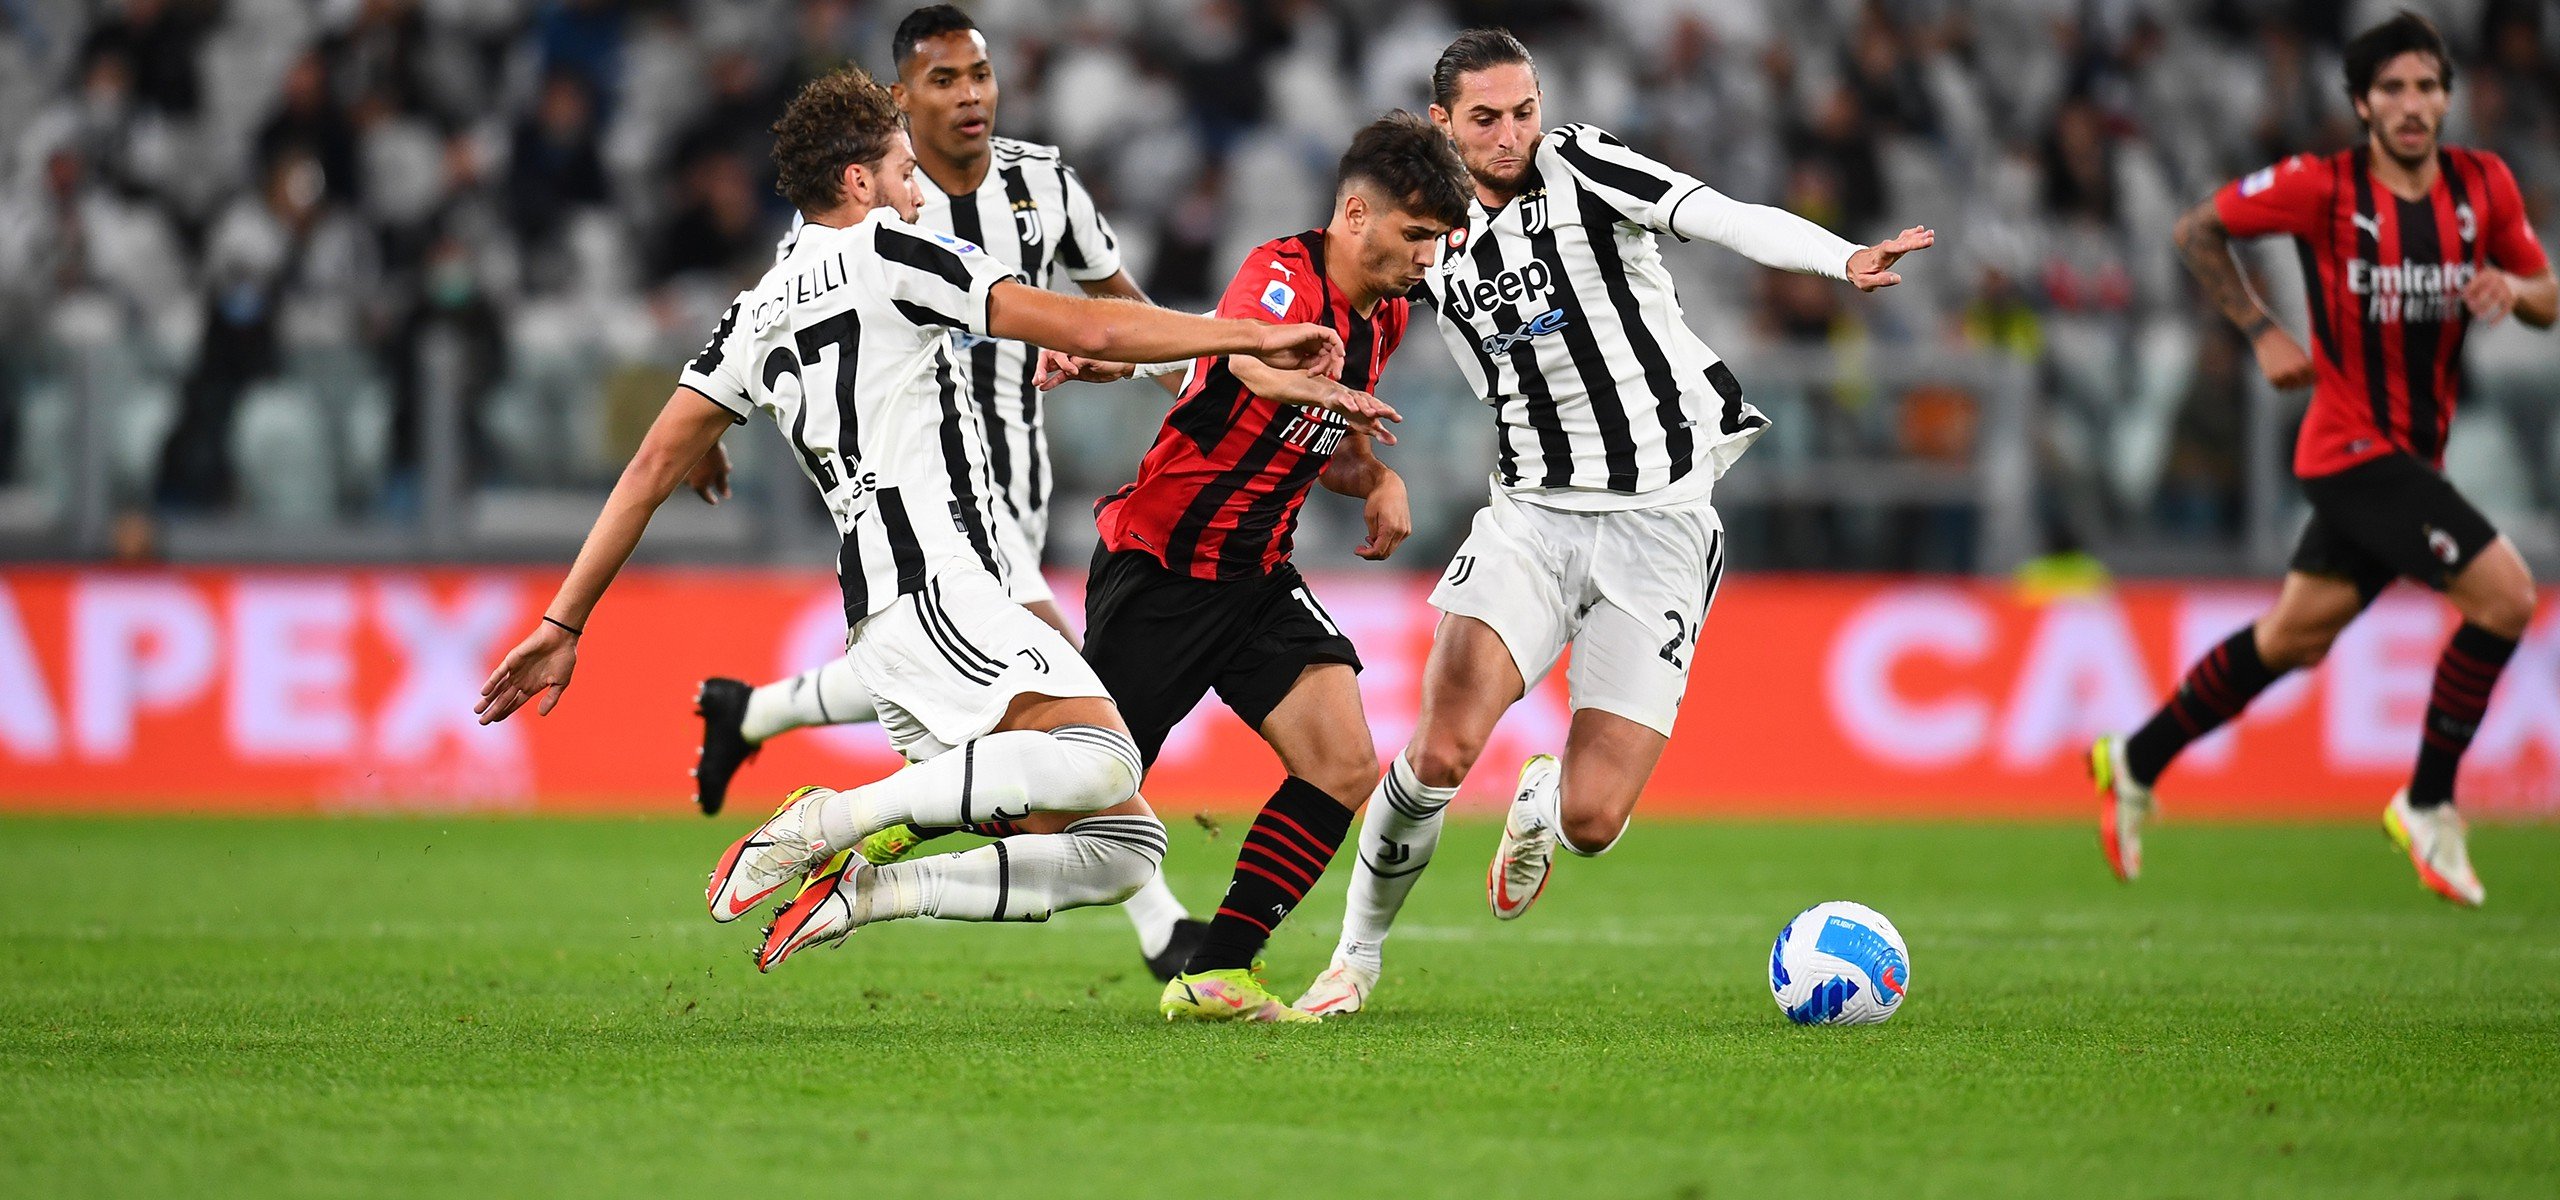 AC Milan – Juventus, les compos officielles du choc avec Leao, Giroud, Vlahovic… titulaires